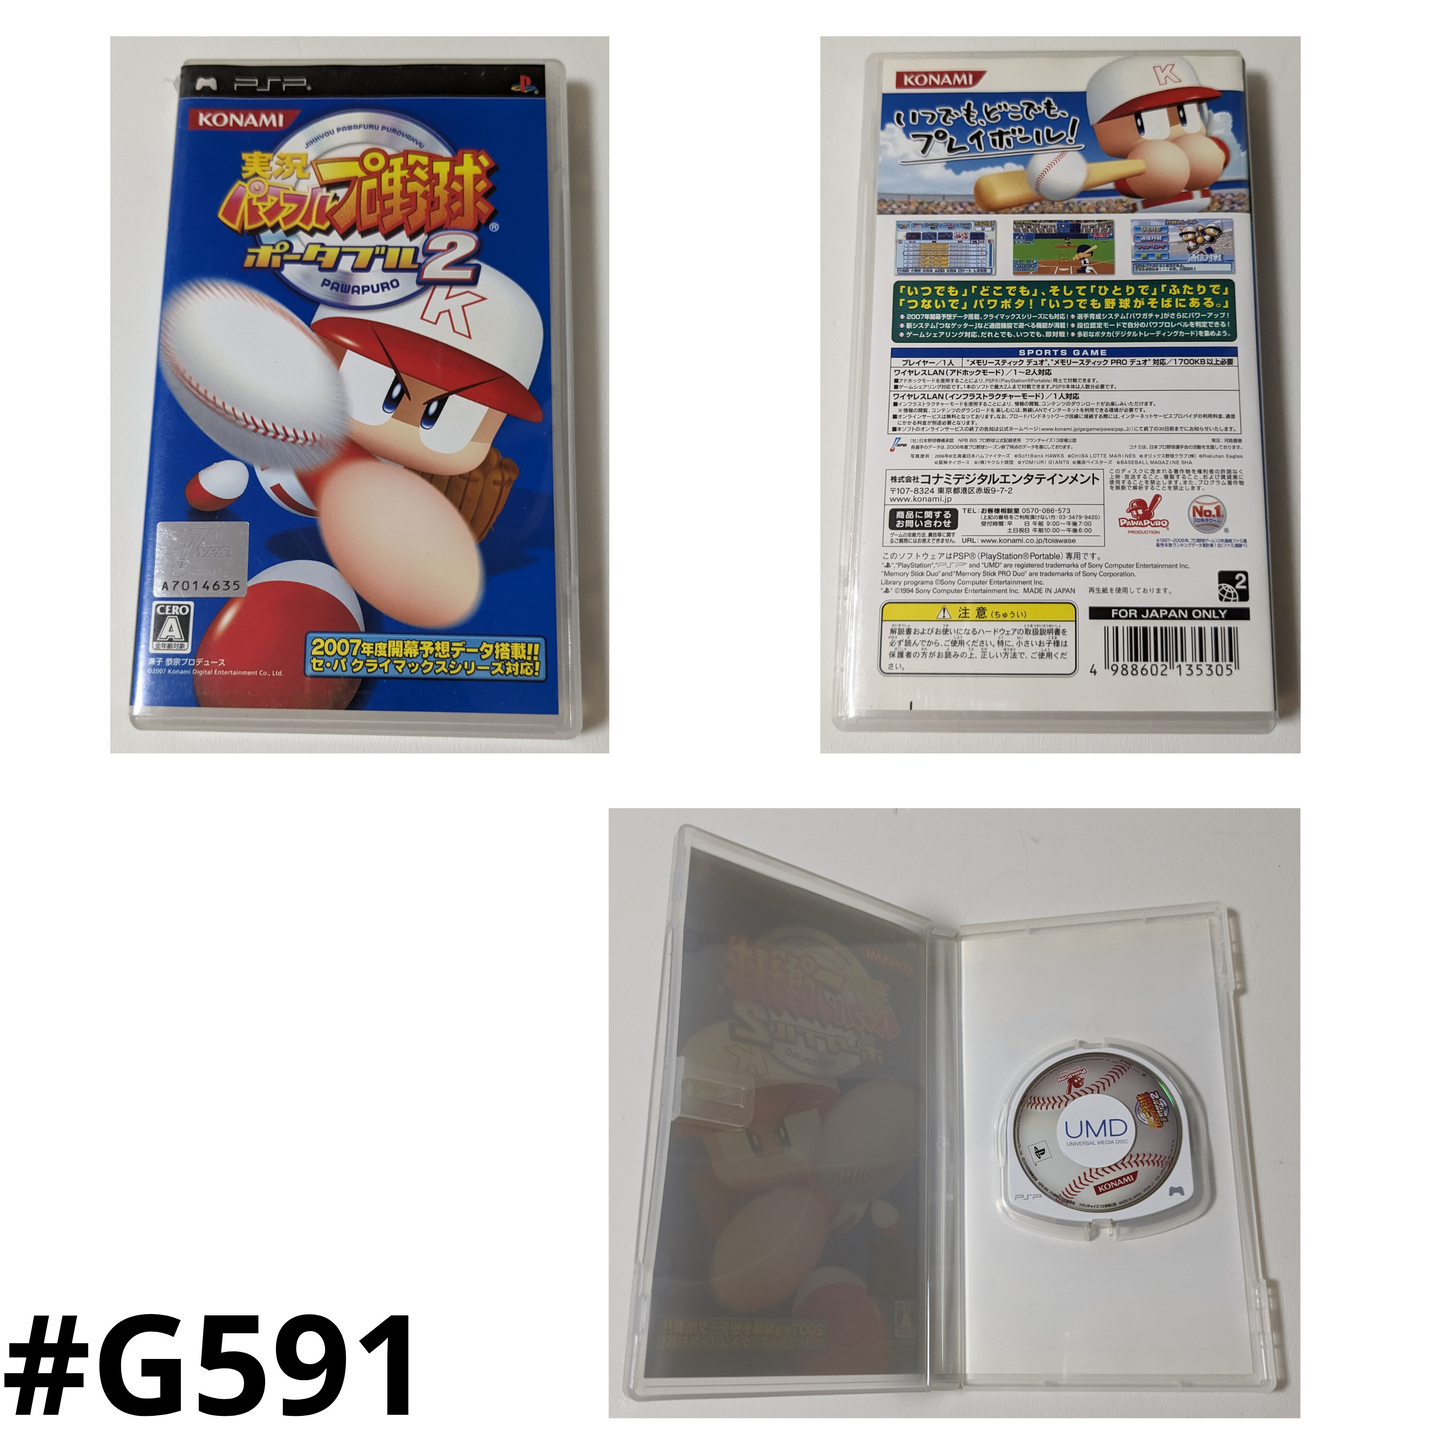 Jikkyou Powerful Baseball portable 2 | PSP | Japonais